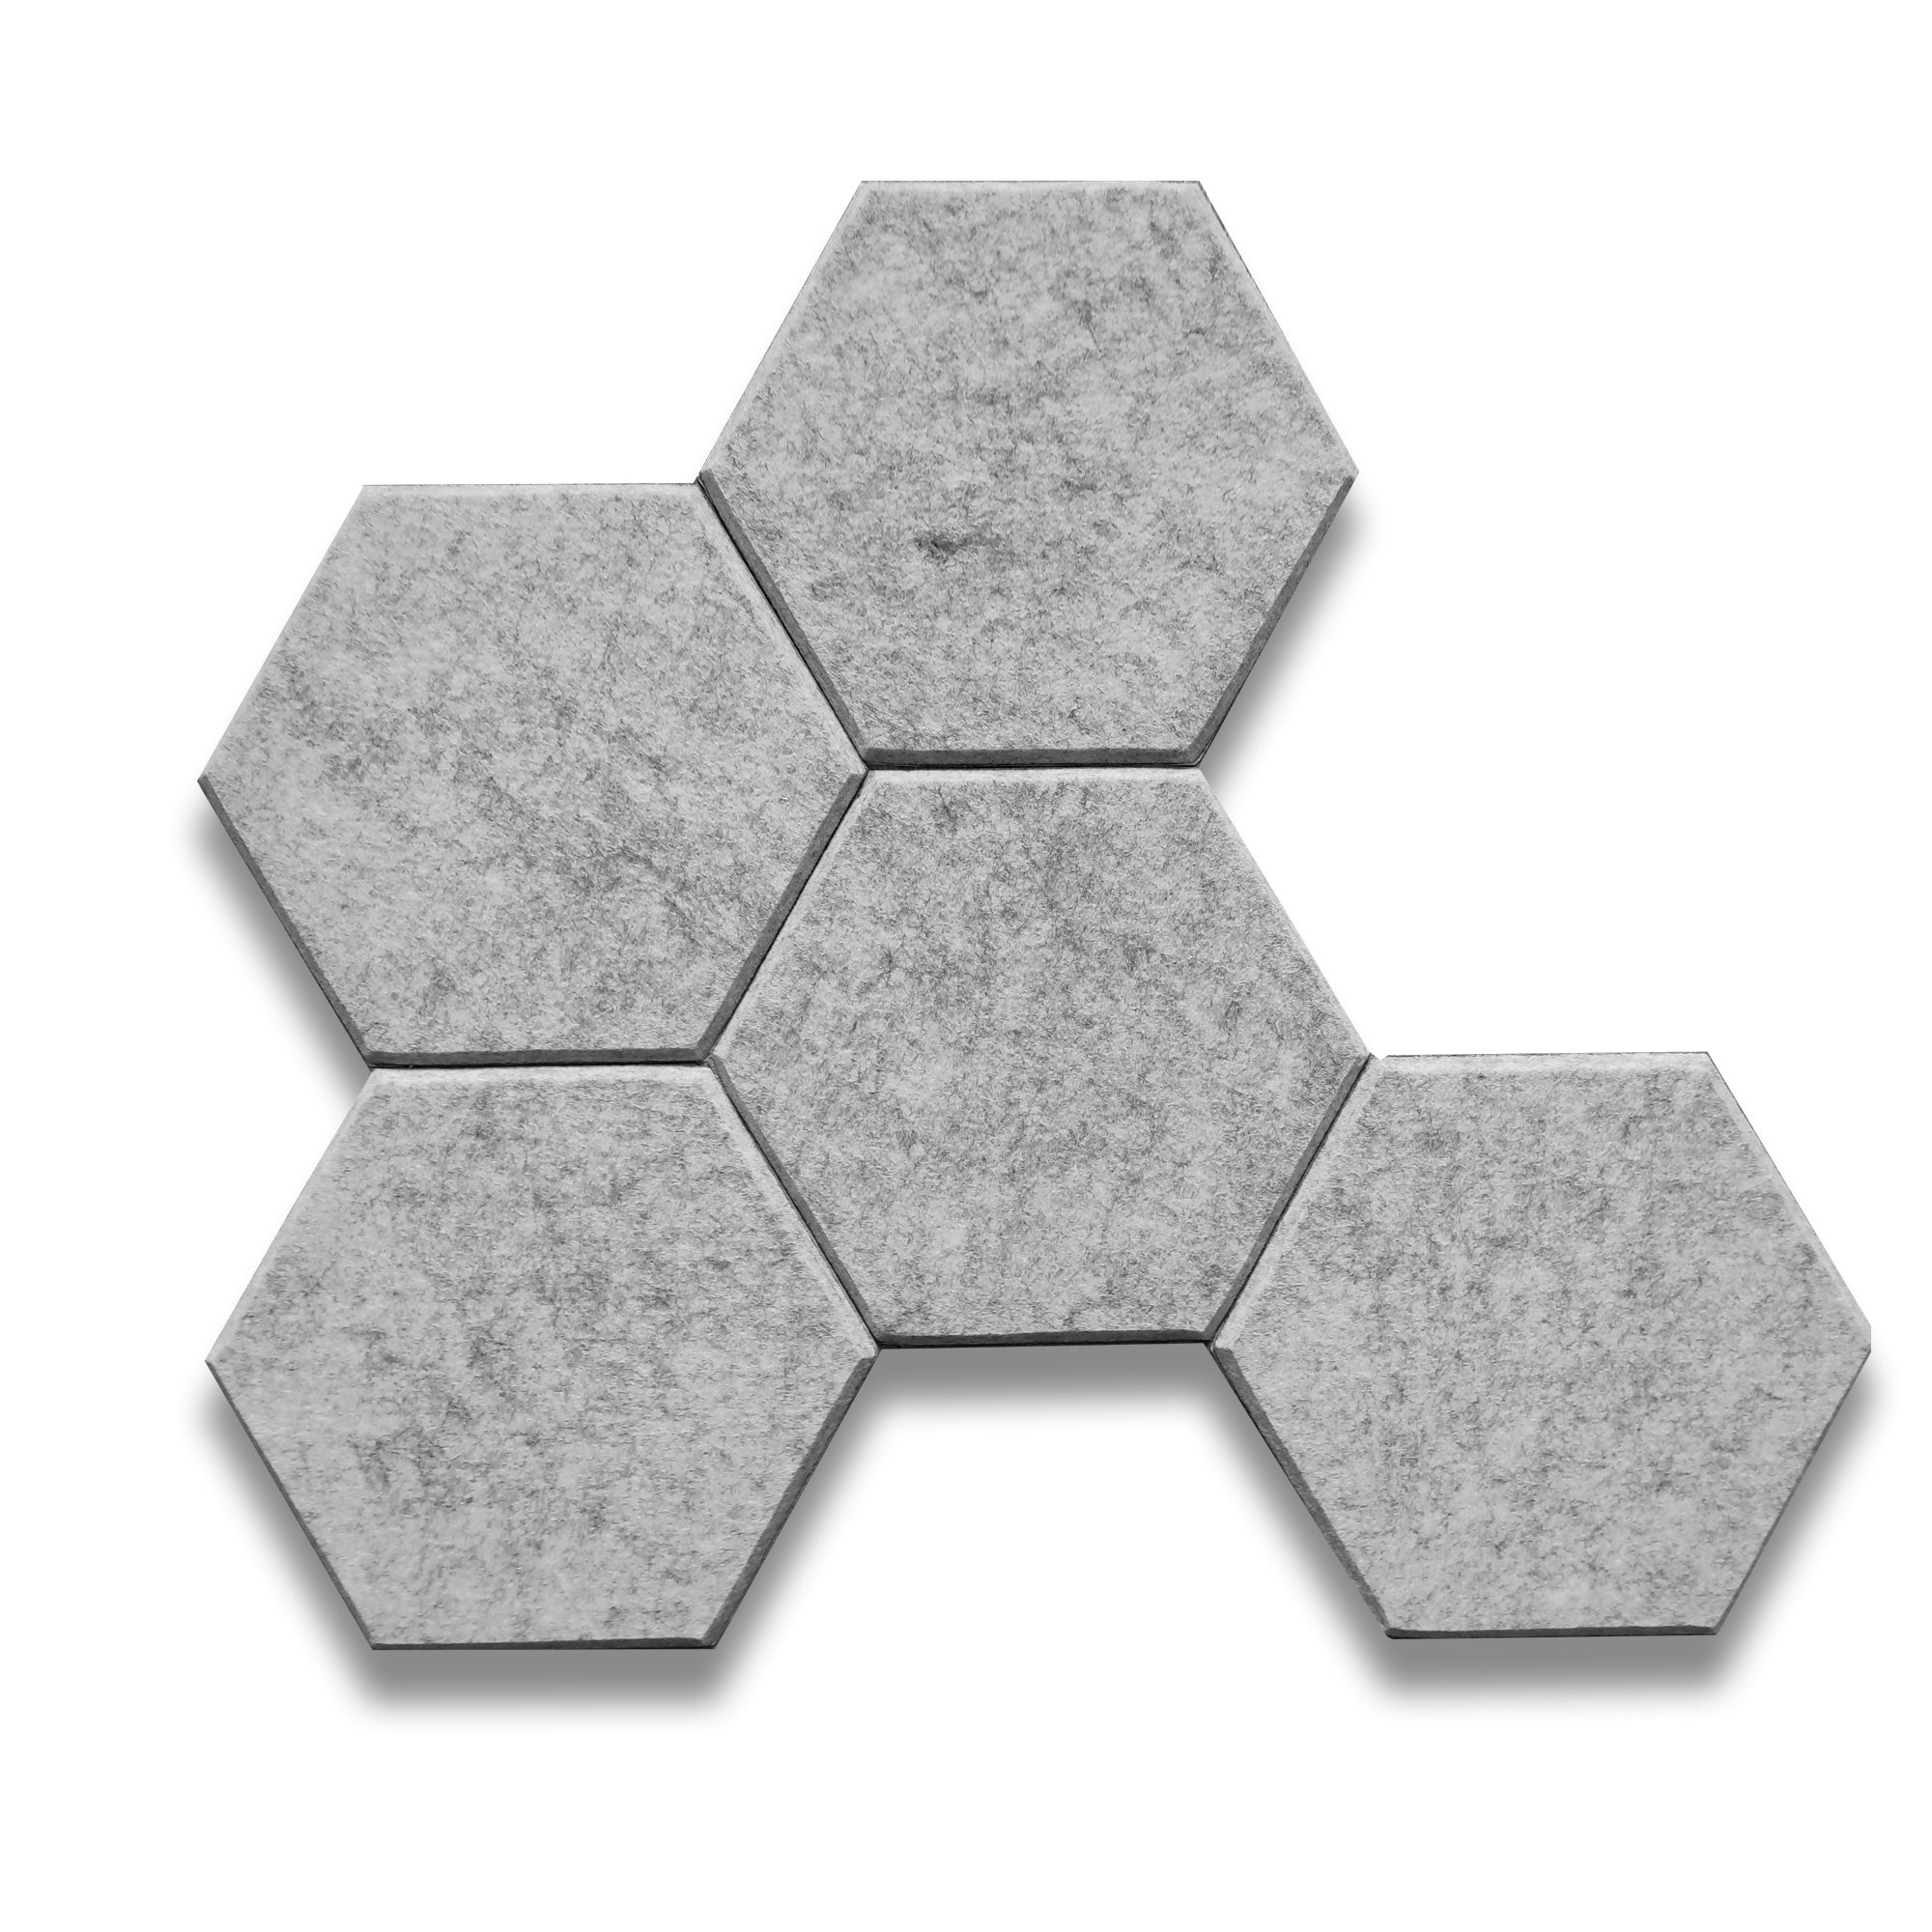 HEXA Felt 3D Panel - GREY 3pcs. - Felt 3D Panels | DecorMania